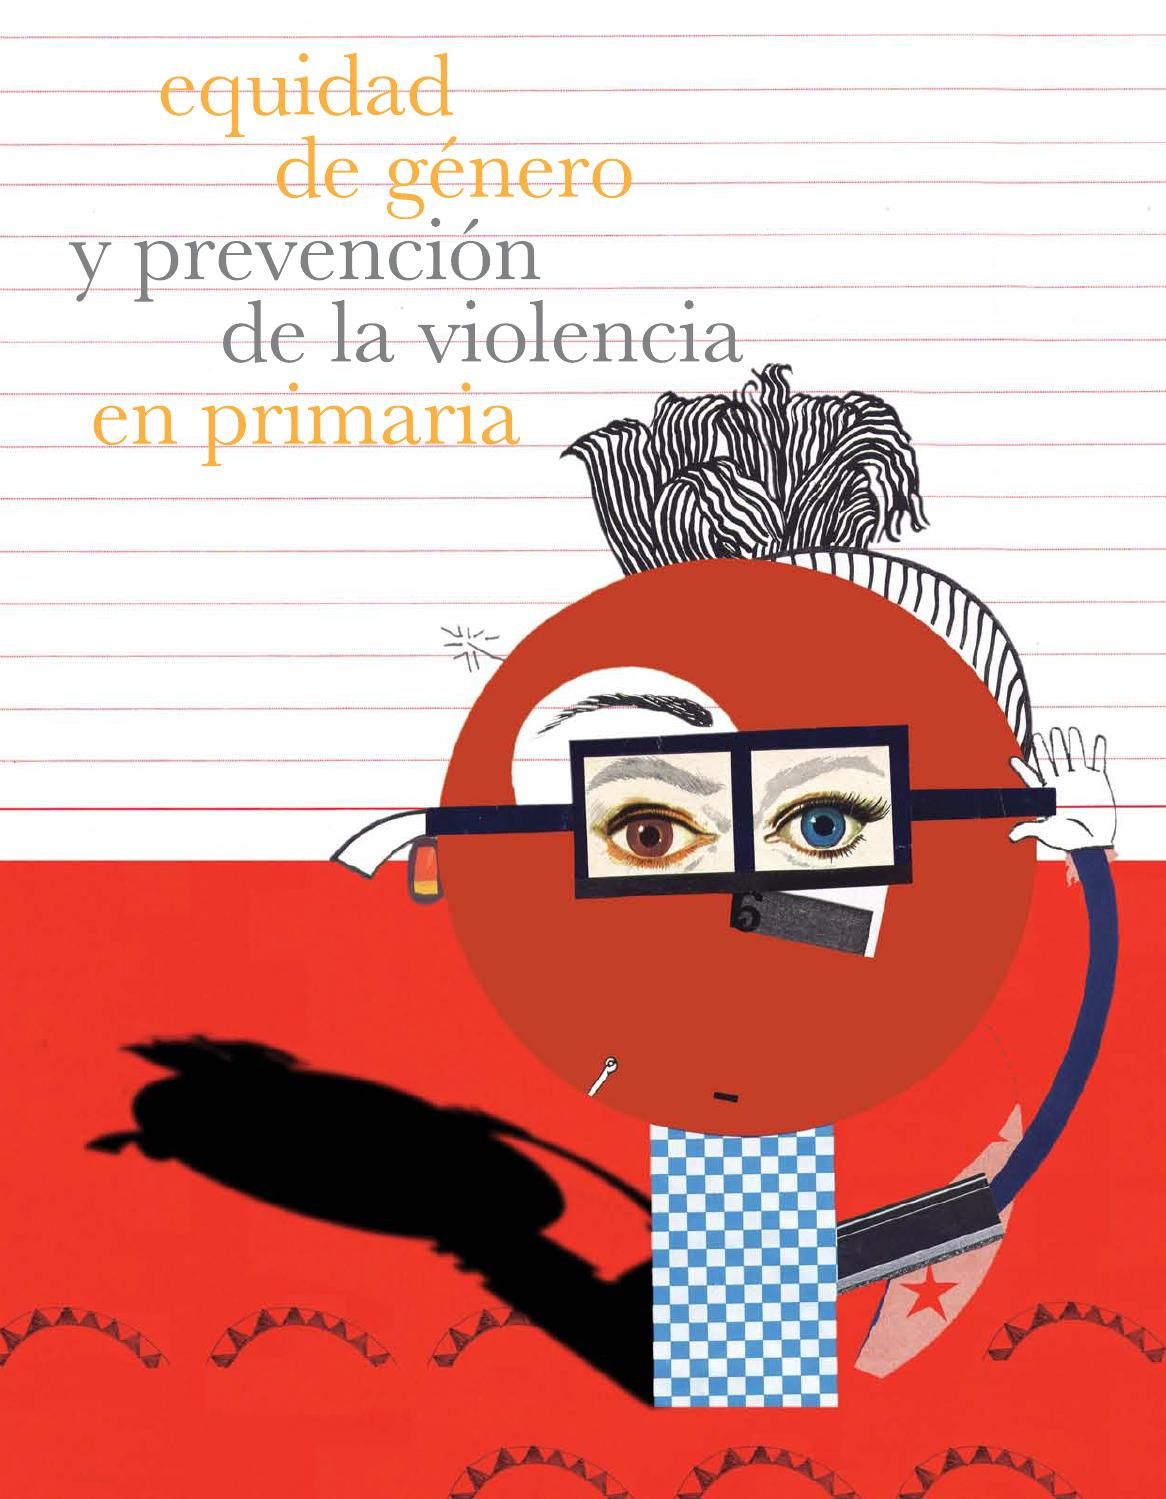 Equidad de género y prevención de la violencia en primaria